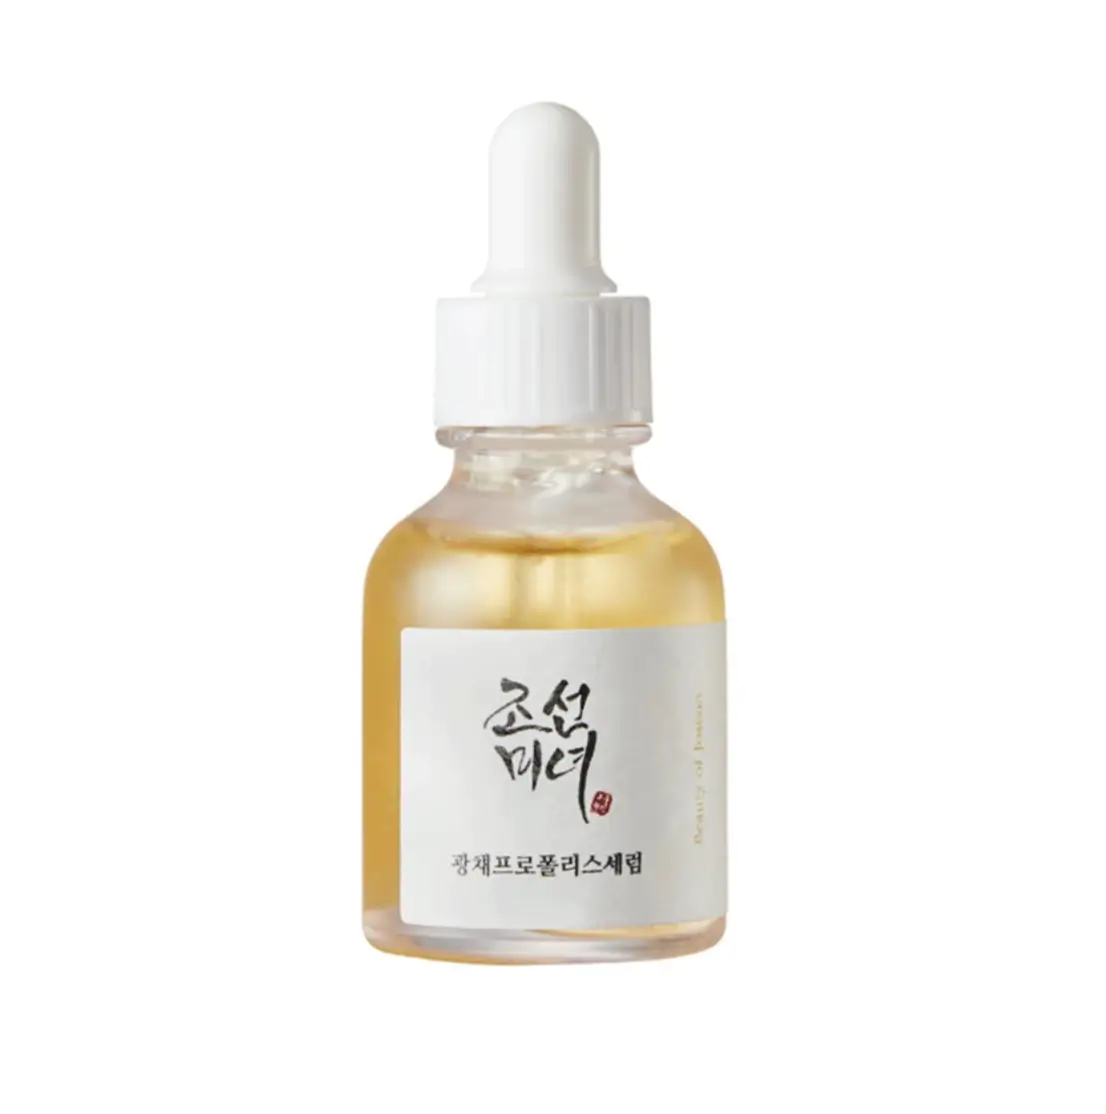 Best Korean skincare serum- Beauty of Joseon Glow Serum